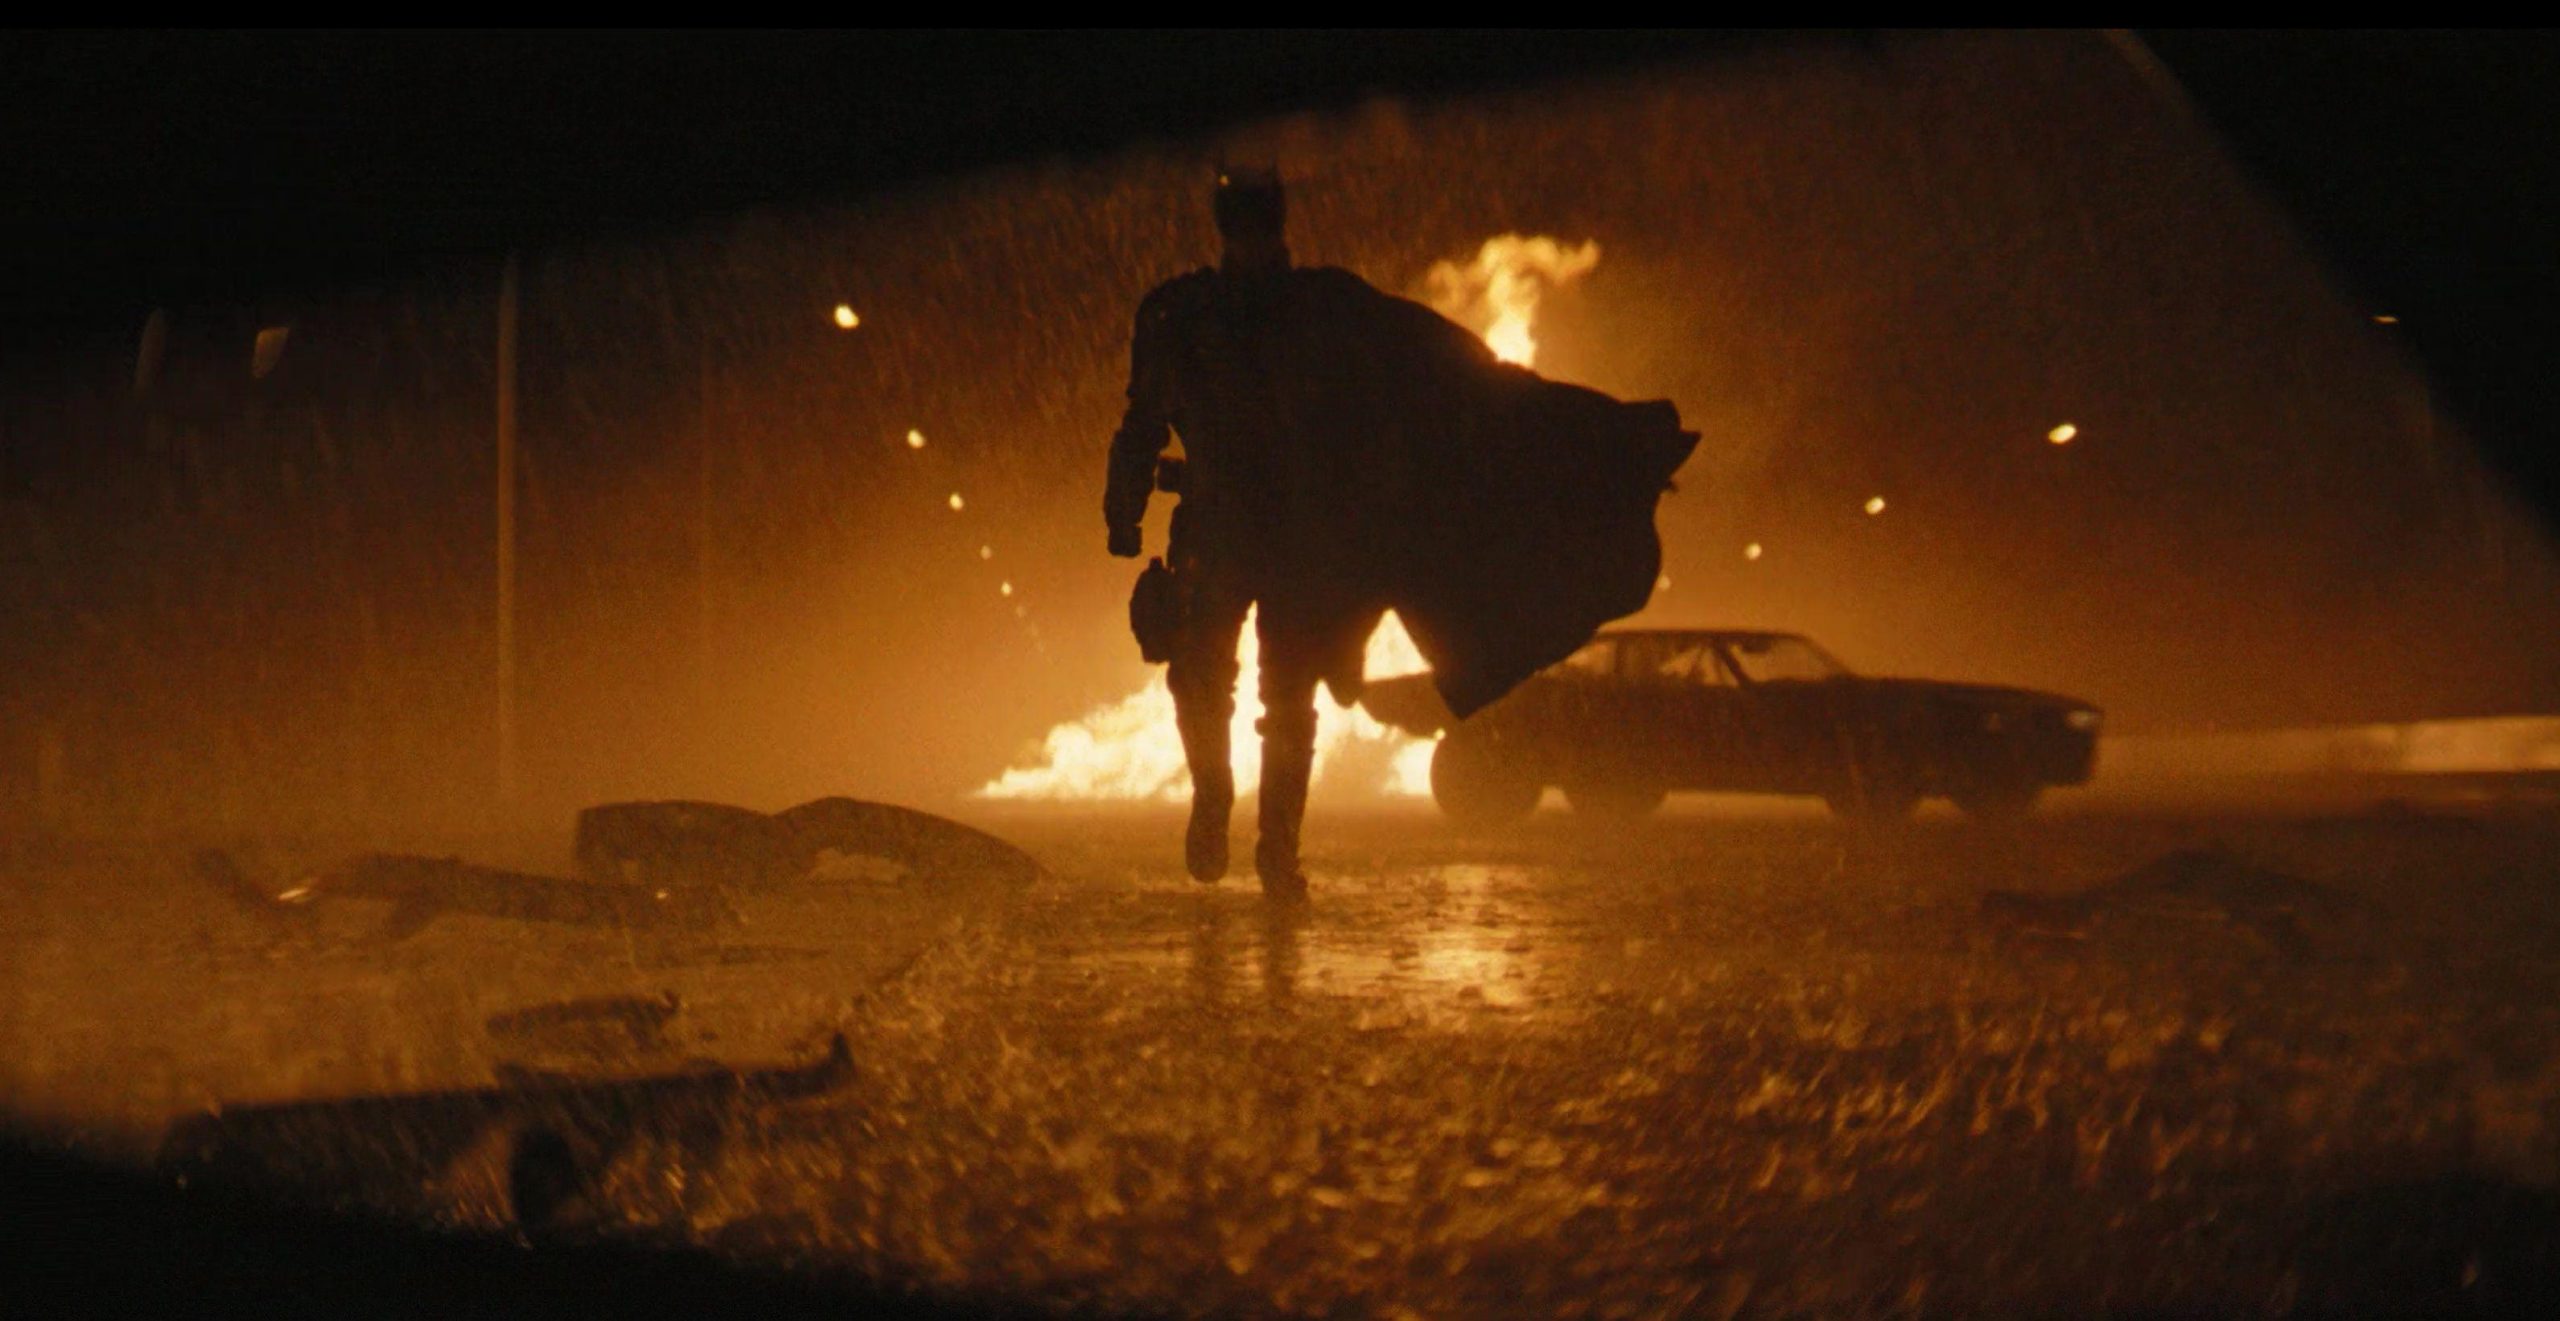 Trailer mới của "The Batman" giới thiệu hàng loạt cảnh hành động, cháy nổ